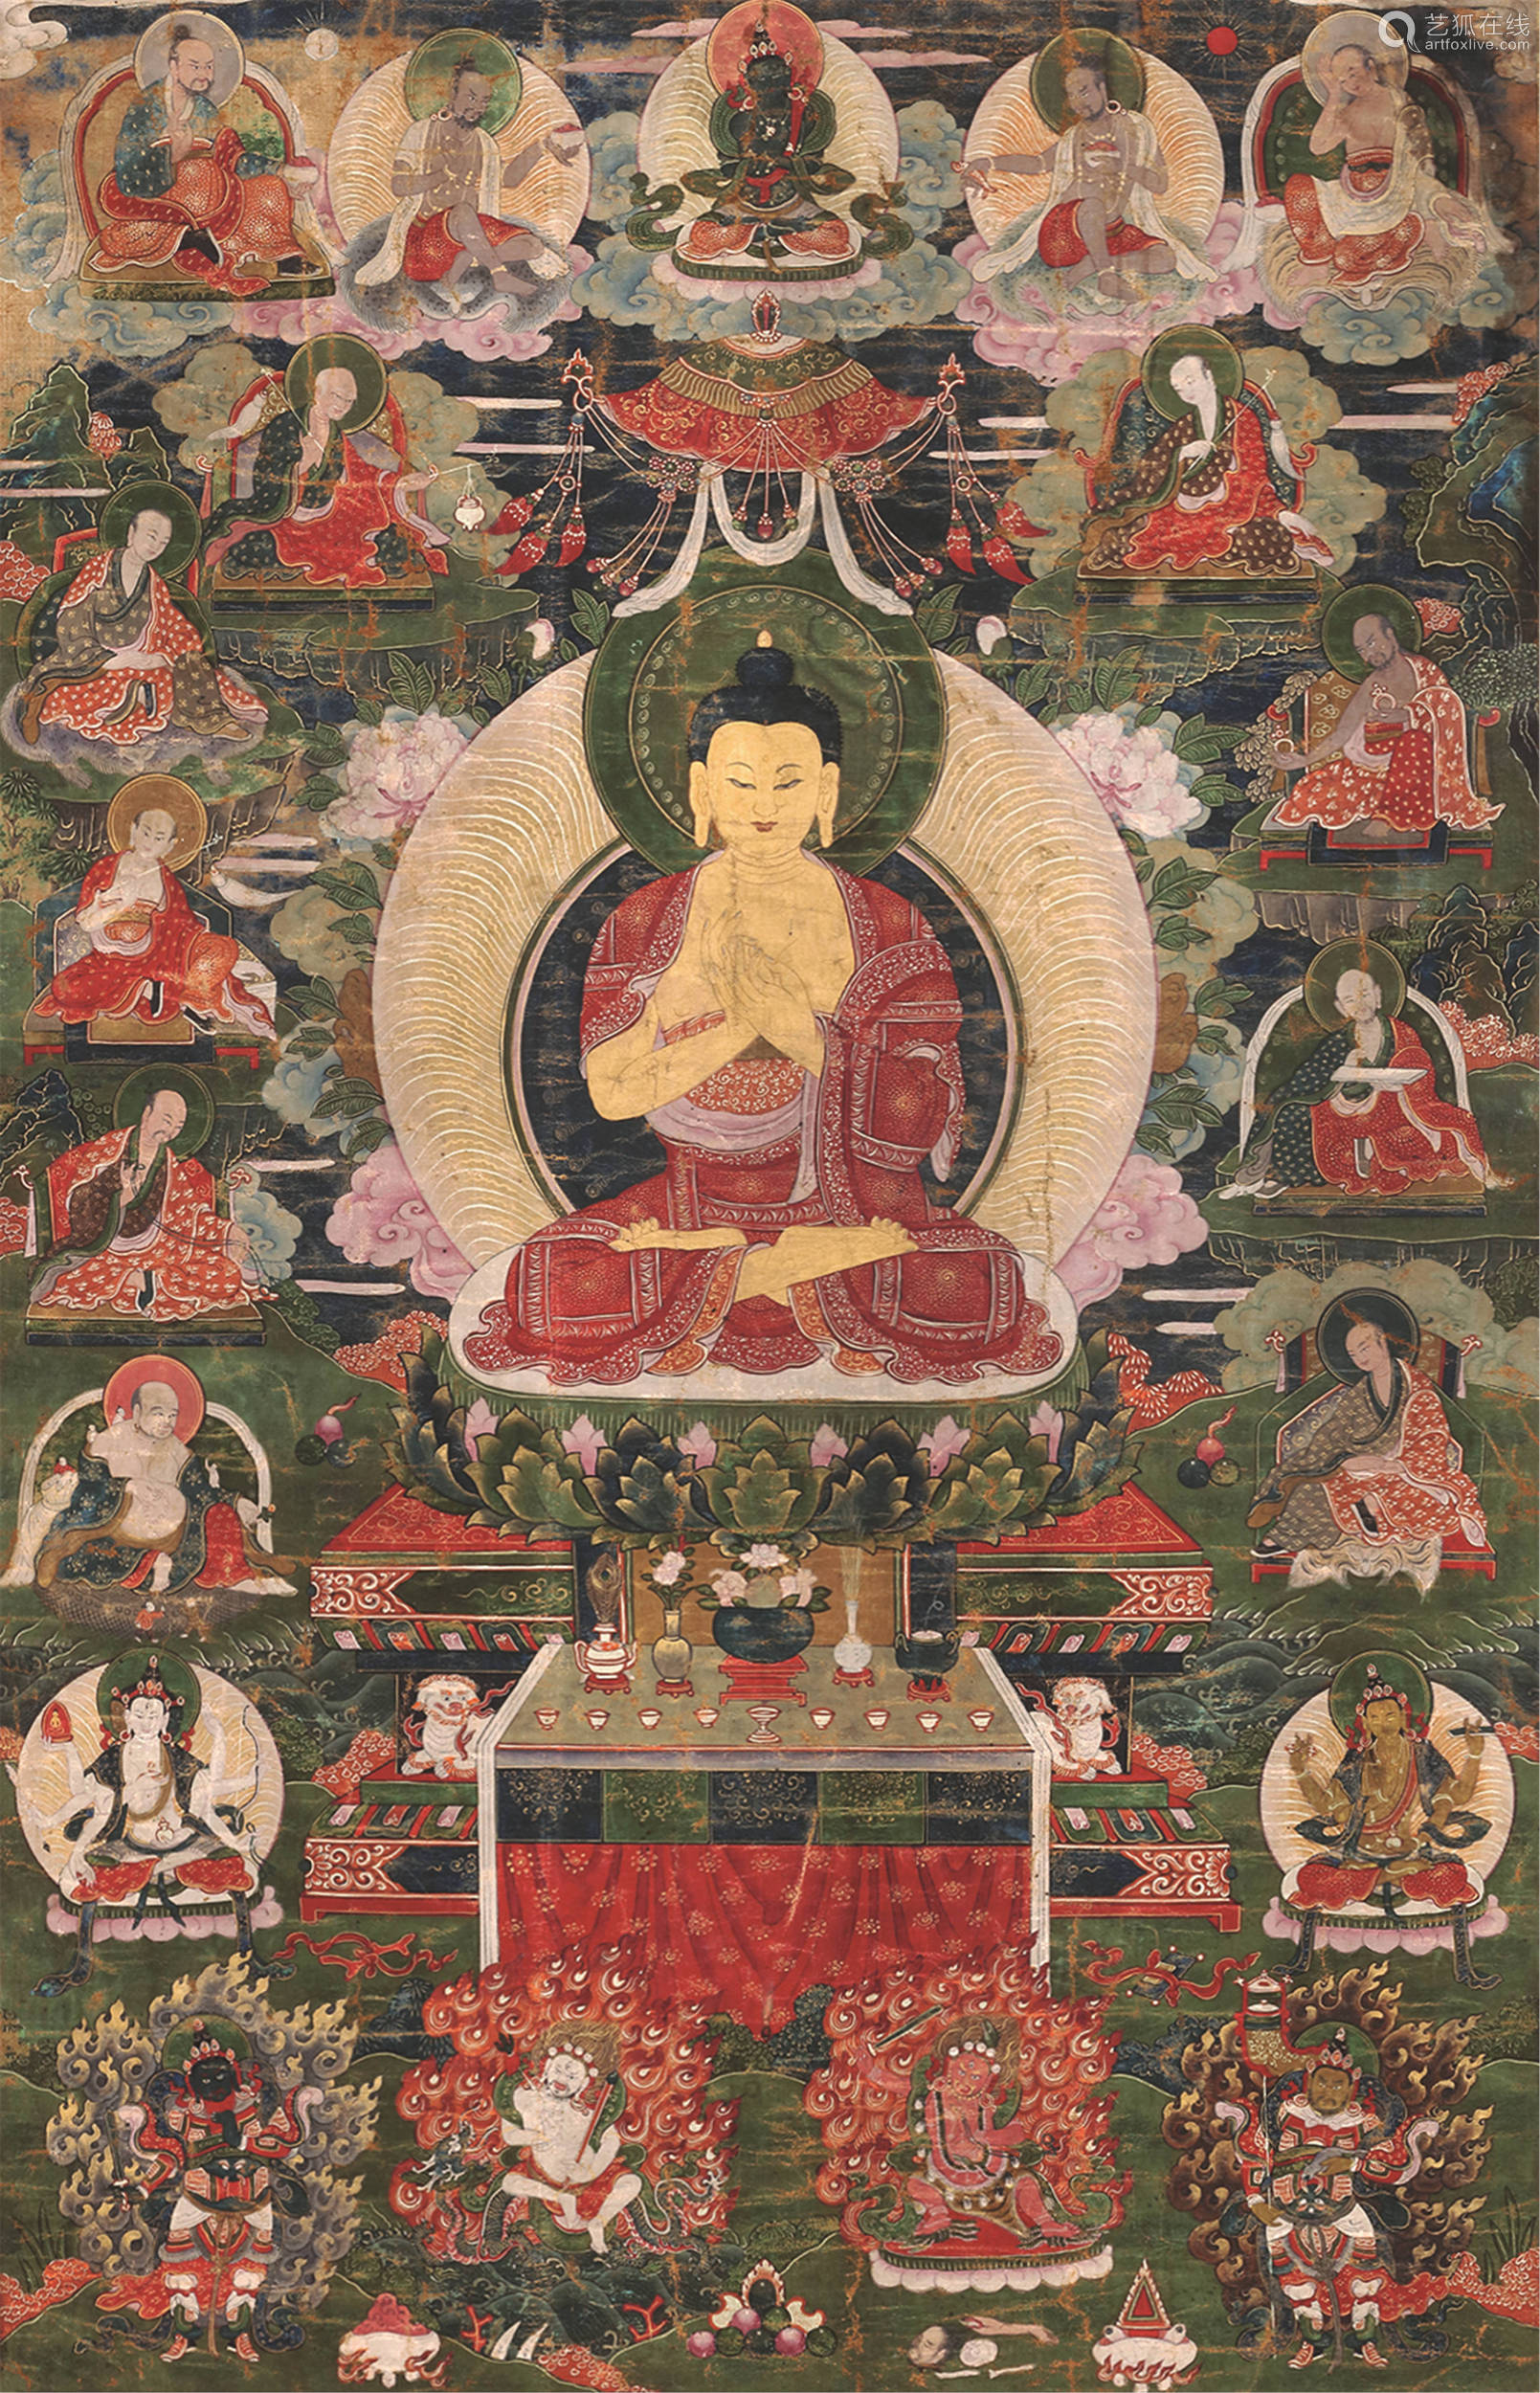 画面中央为释迦牟尼佛,头饰螺发,身着袈裟和僧裙,双手于胸前结说法印